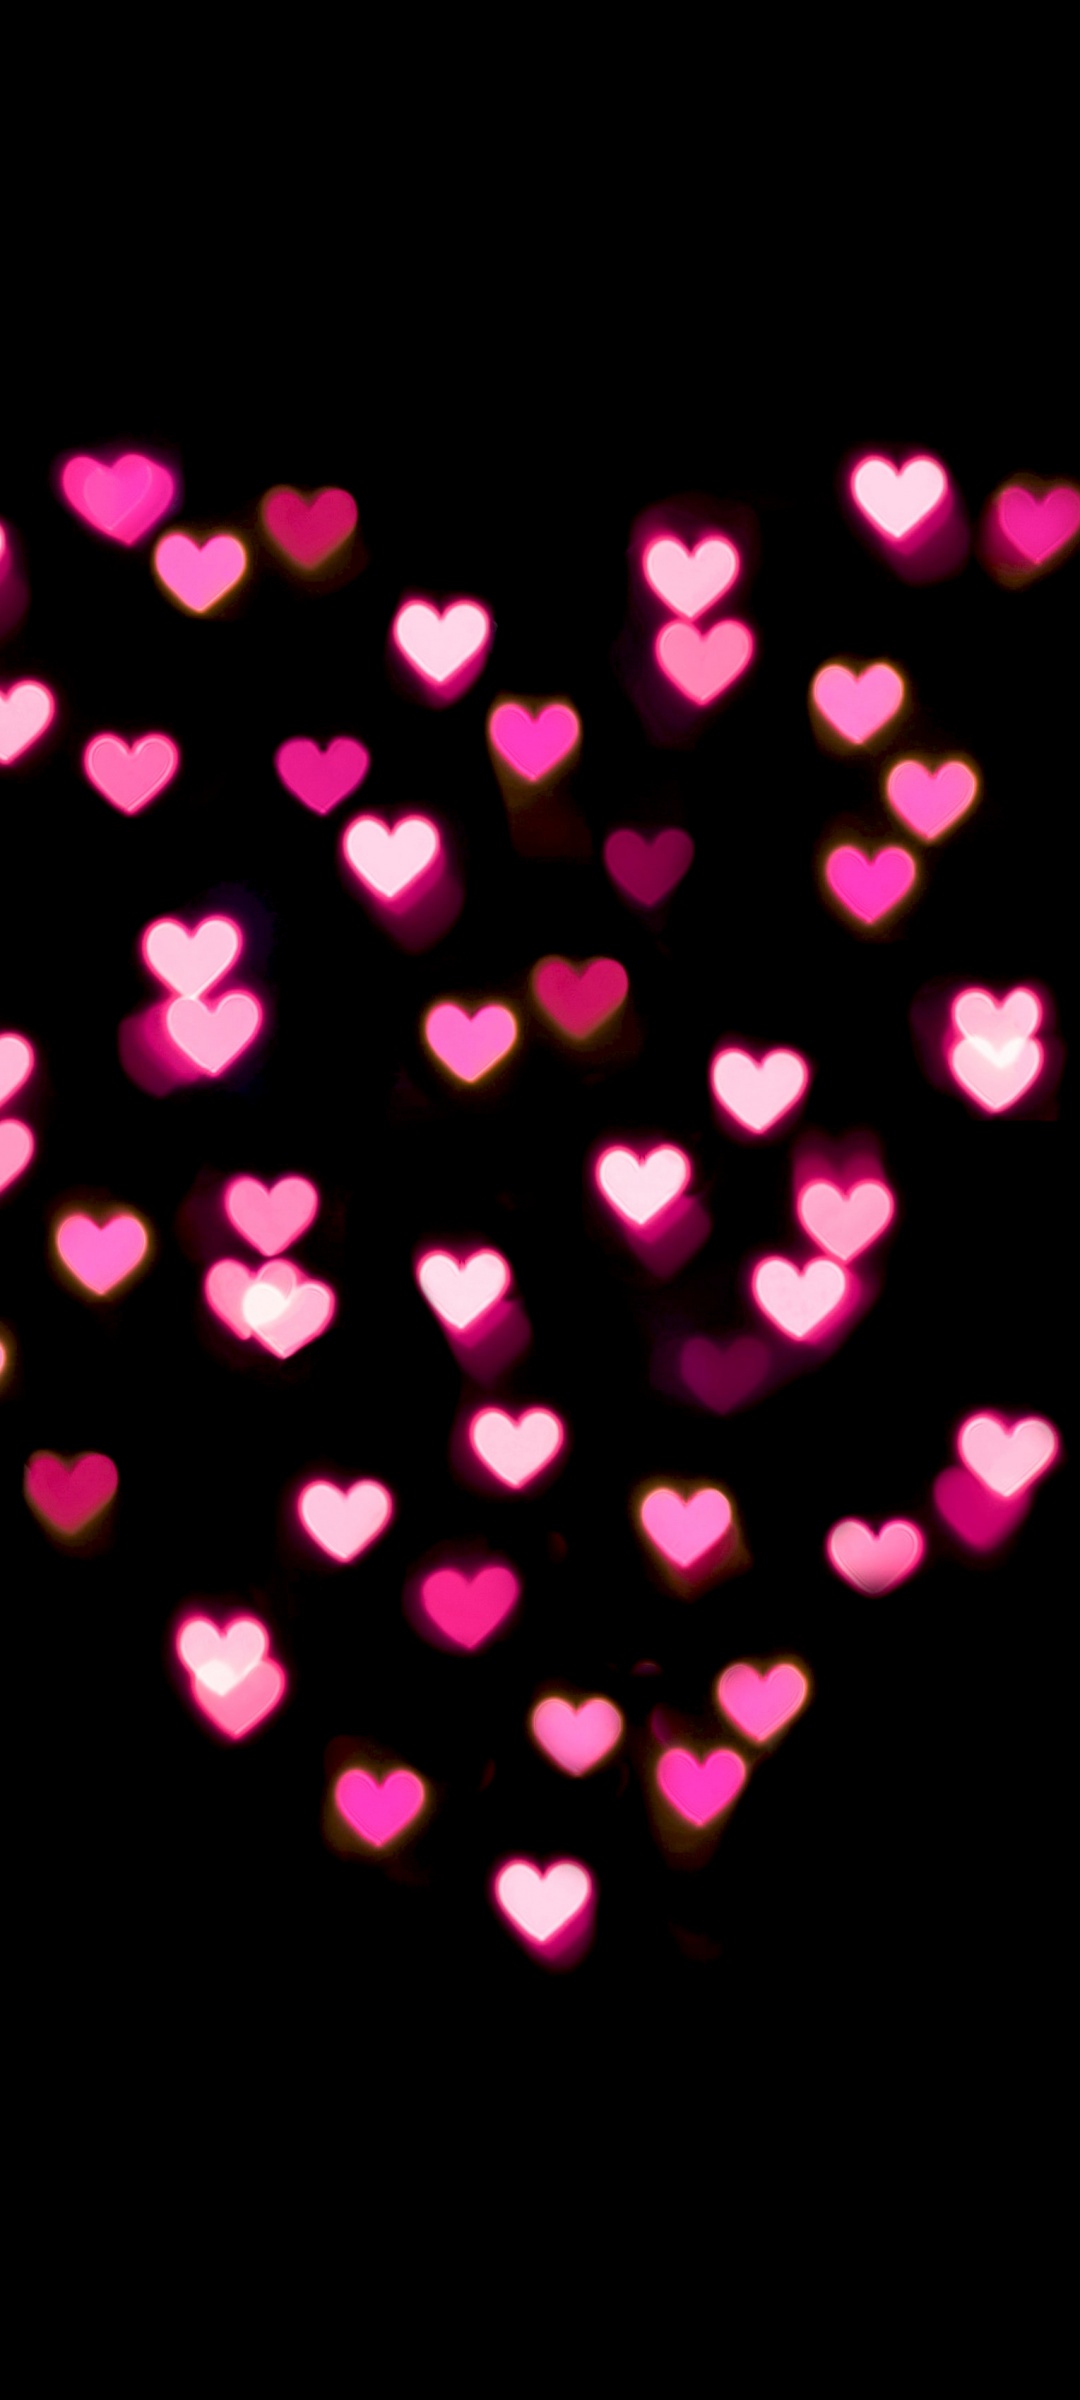 Tình yêu trong màu hồng của trái tim là sự kết hợp tuyệt vời để tạo nên hình nền lãng mạn và đáng yêu. Hãy để trái tim hồng toả sáng và mang tình yêu đến với bạn mỗi khi bạn dùng điện thoại.